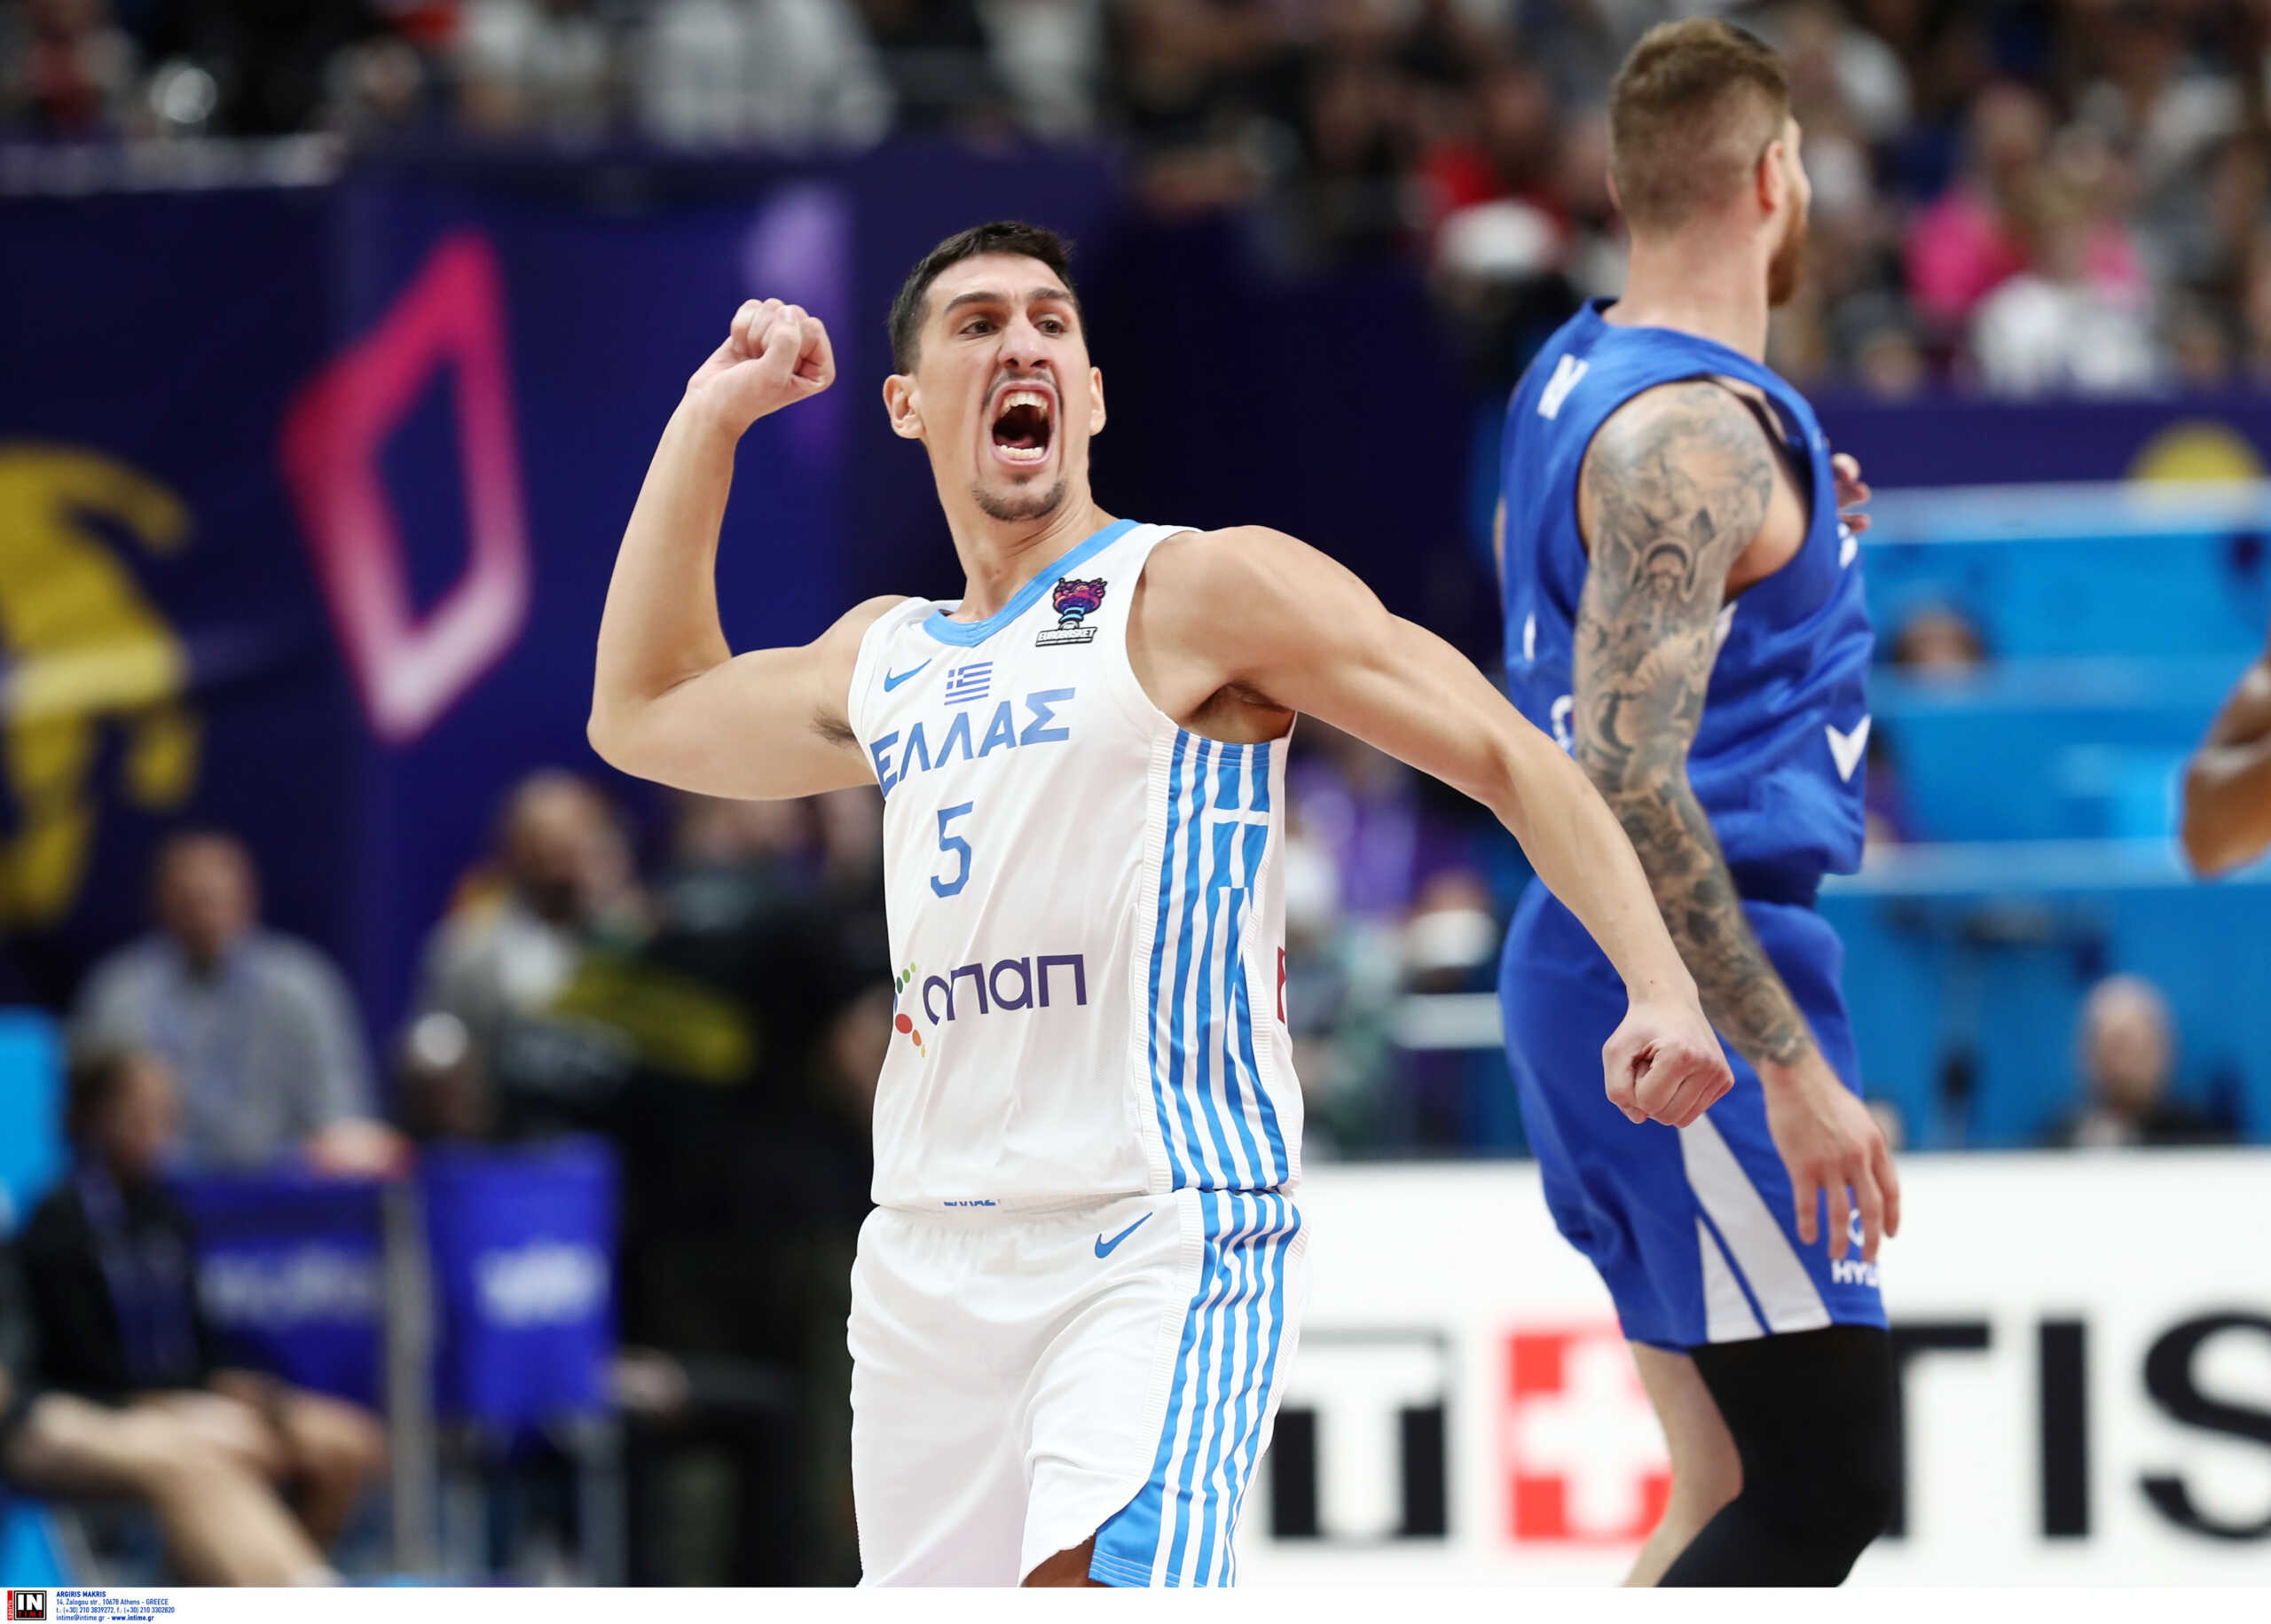 Ελλάδα – Γερμανία: Ποια μέρα και τι ώρα είναι το παιχνίδι για τα προημιτελικά του Eurobasket 2022